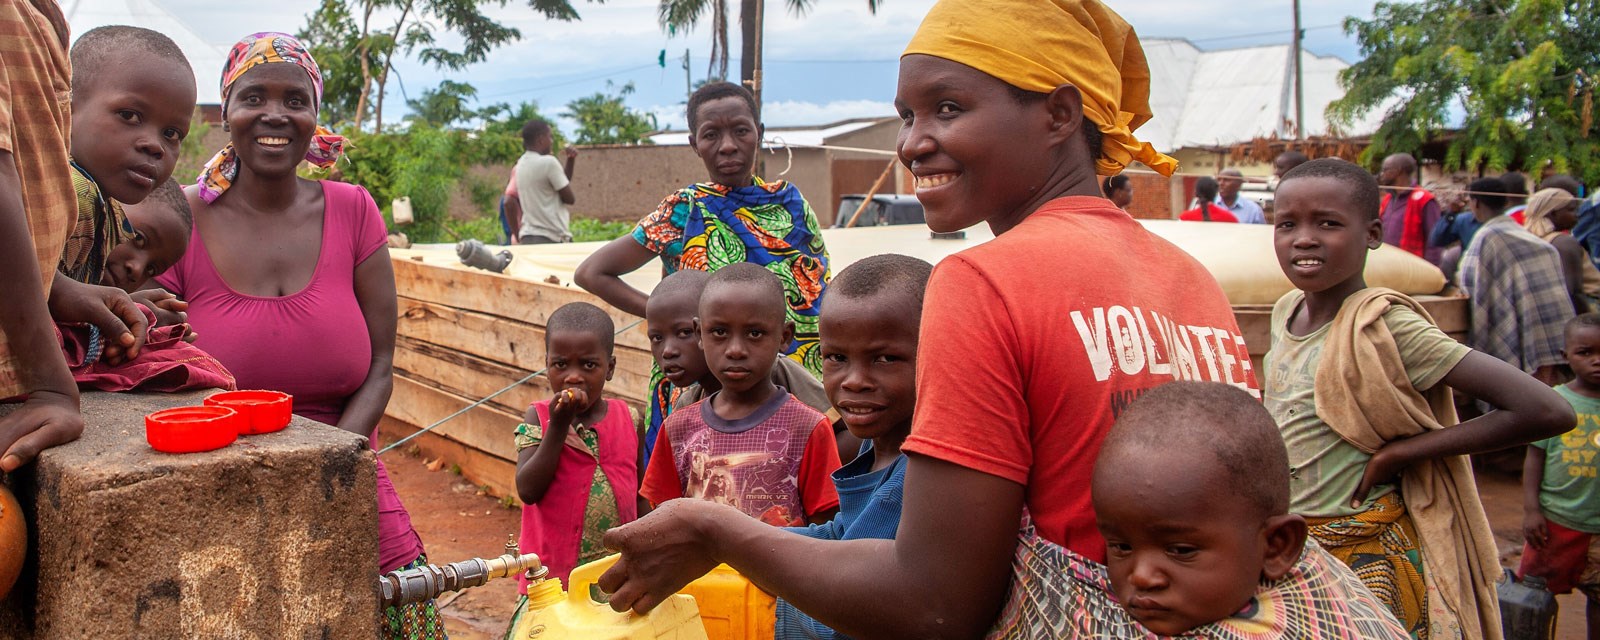 Unge gutter henter vann i kanner, burundi